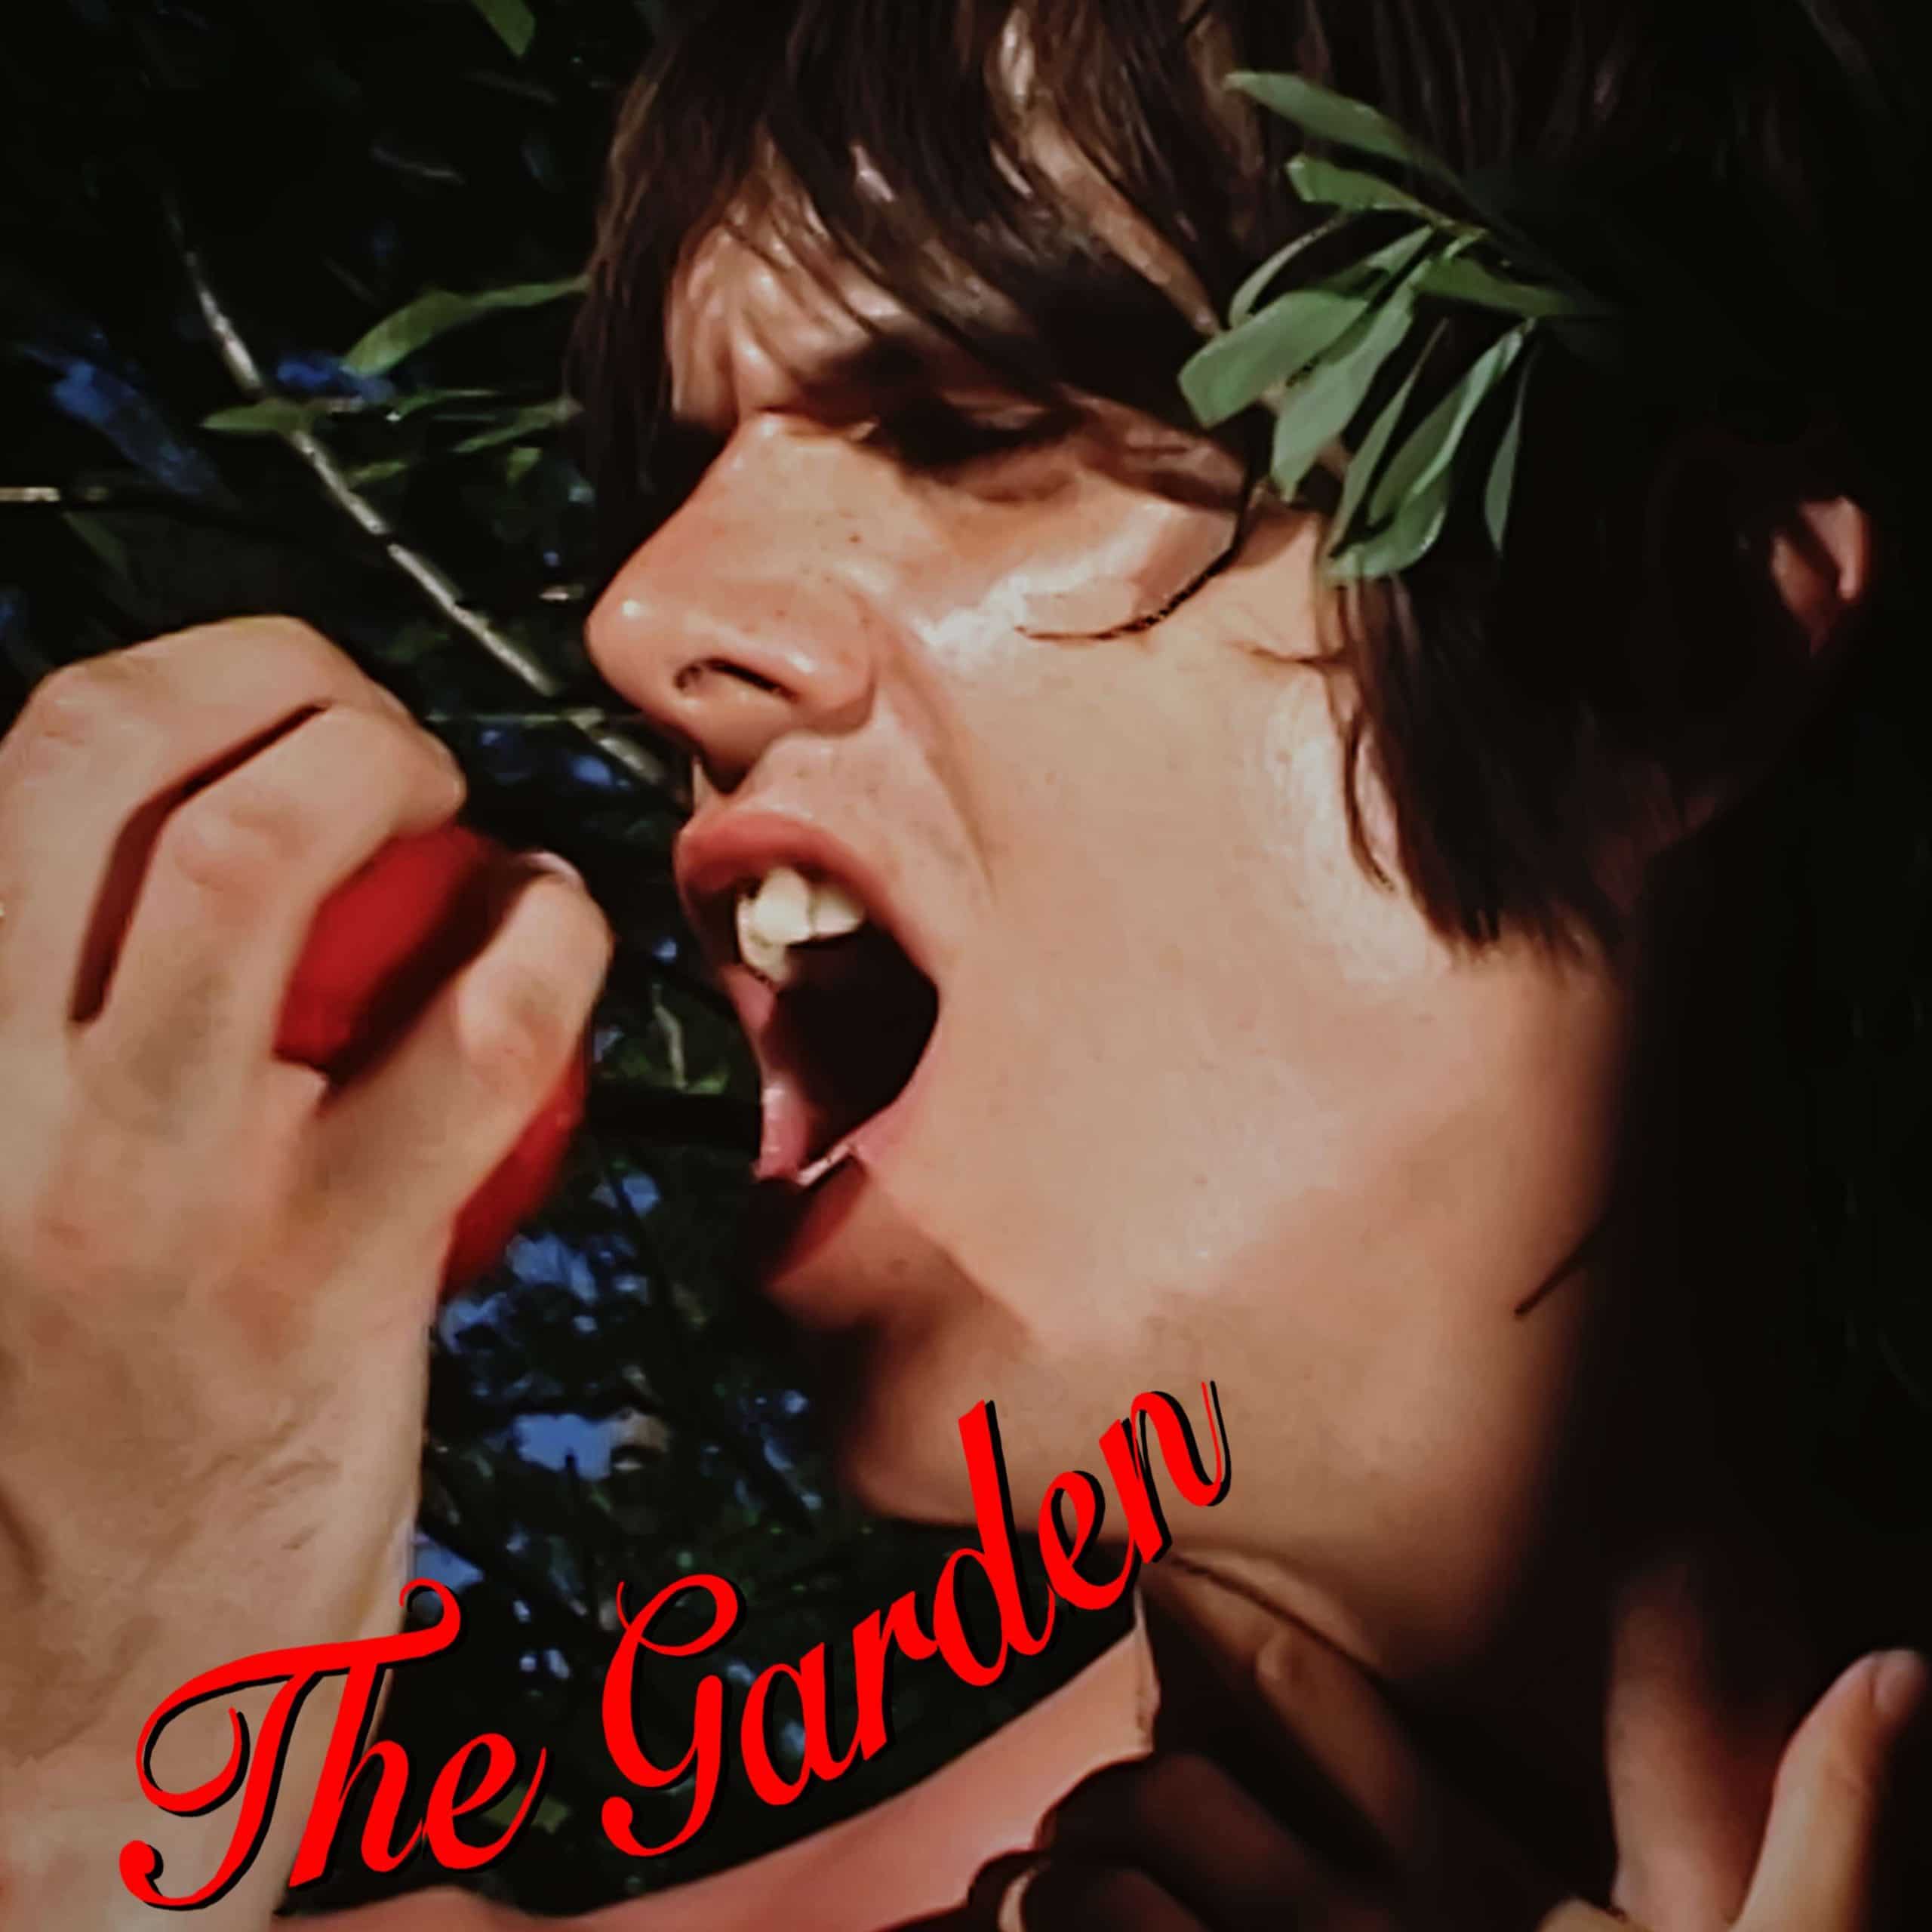 Papooz estrena video de “The Garden”